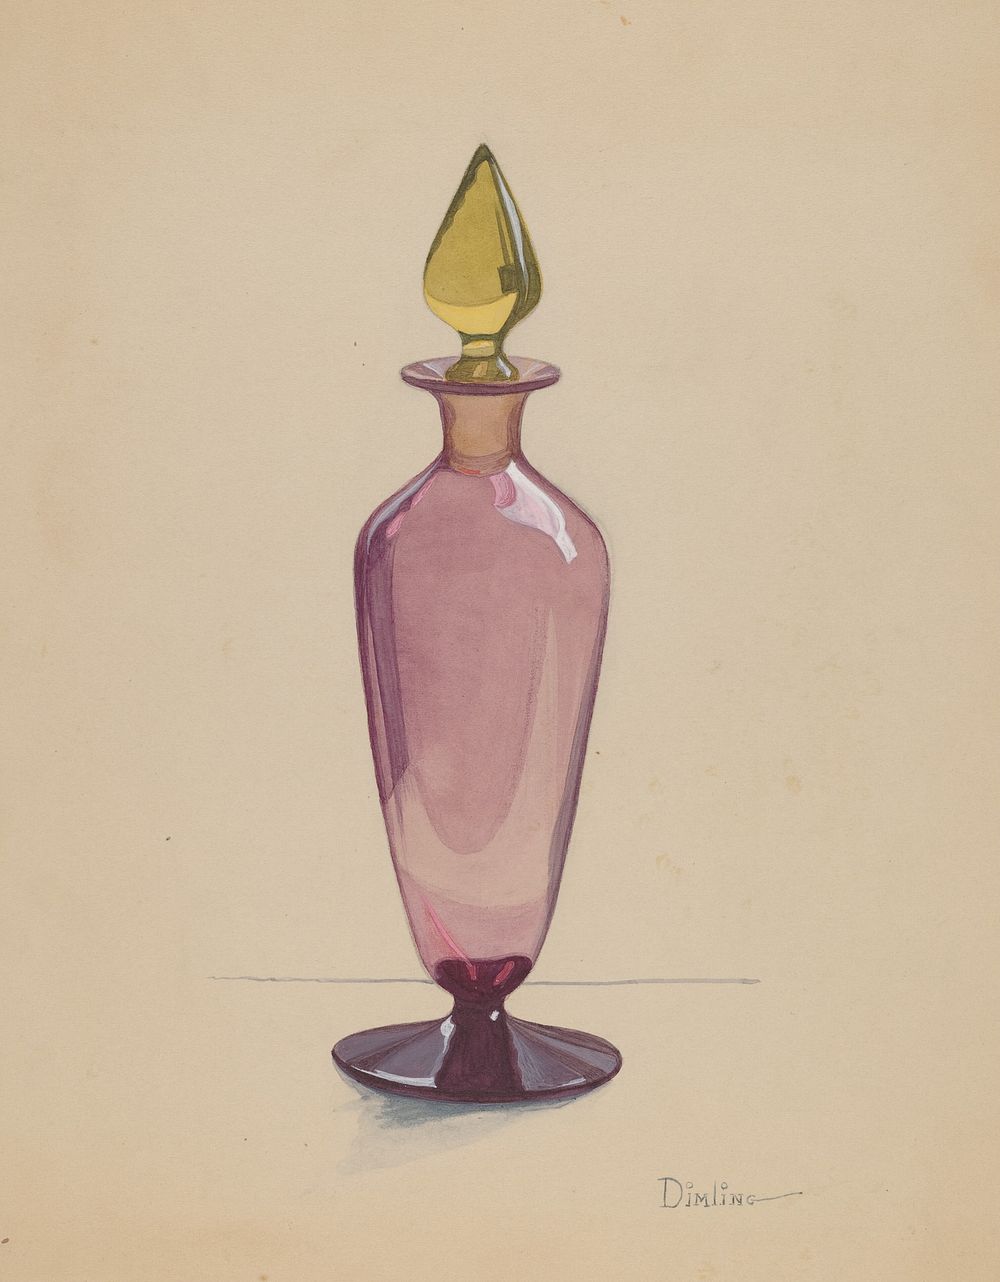 Cologne Bottle (1935&ndash;1942) by Elizabeth Dimling.  